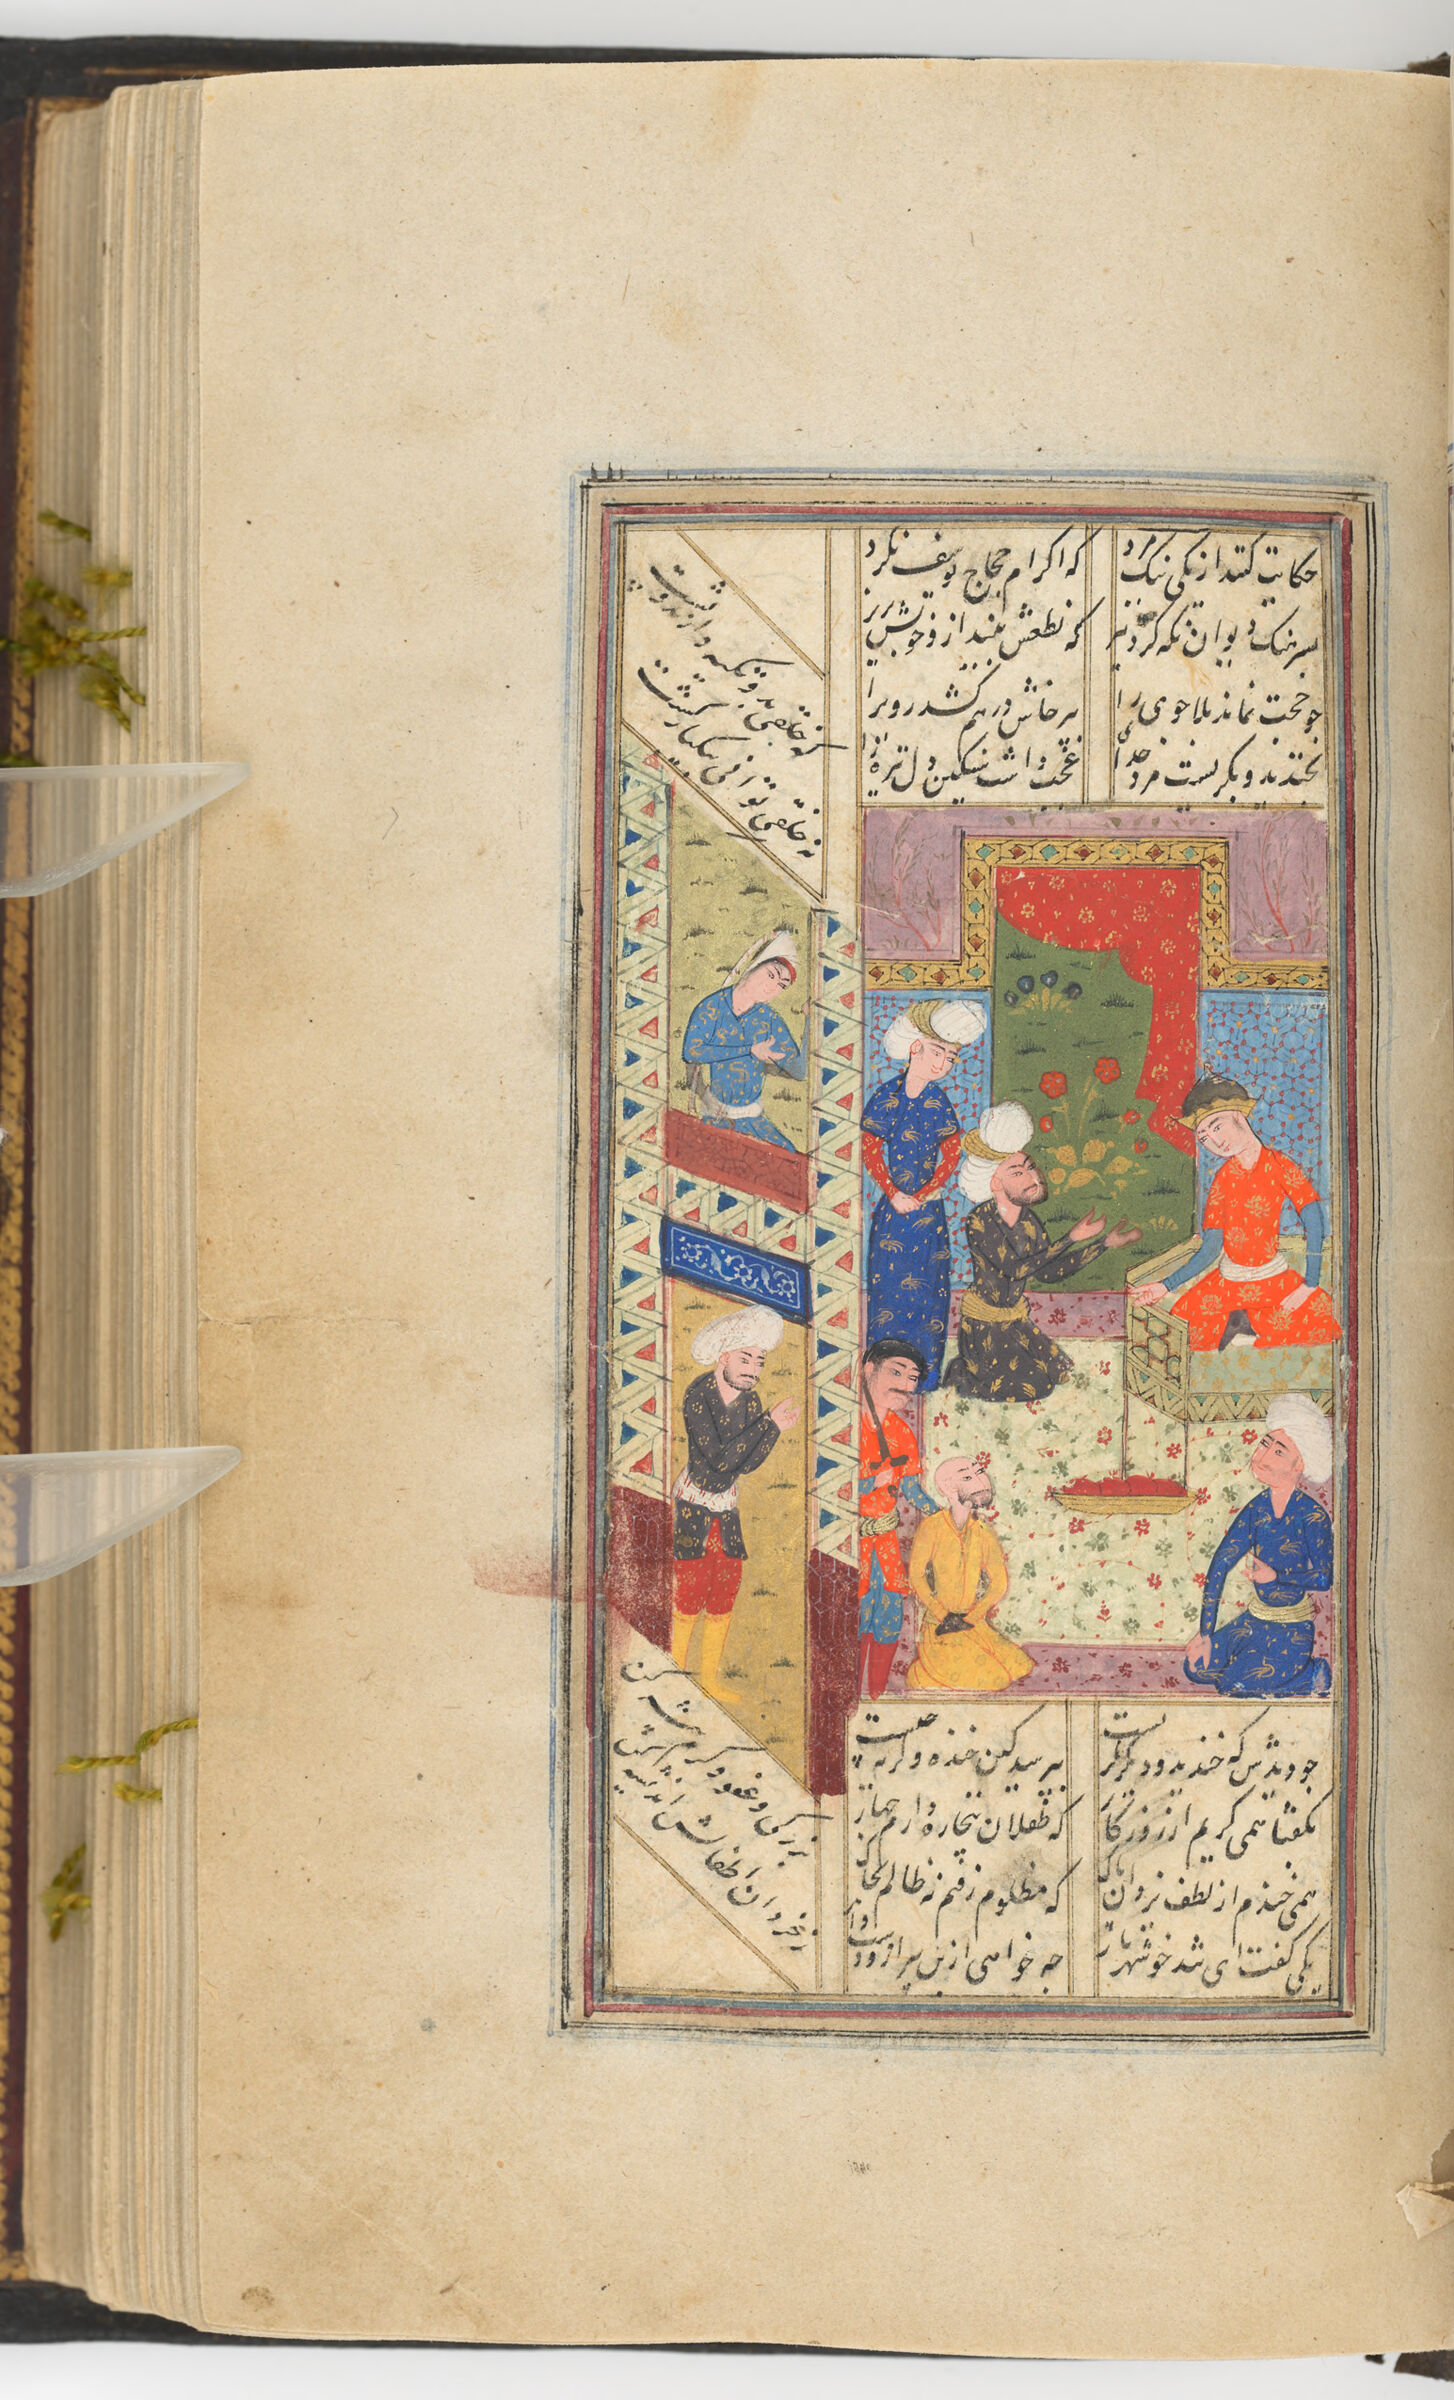 The Man Who Disrespected Hajjaj B. Yusuf (Painting Recto; Text Verso Of Folio 64), Painting From A Manuscript Of The Kulliyat Of Sa‘di